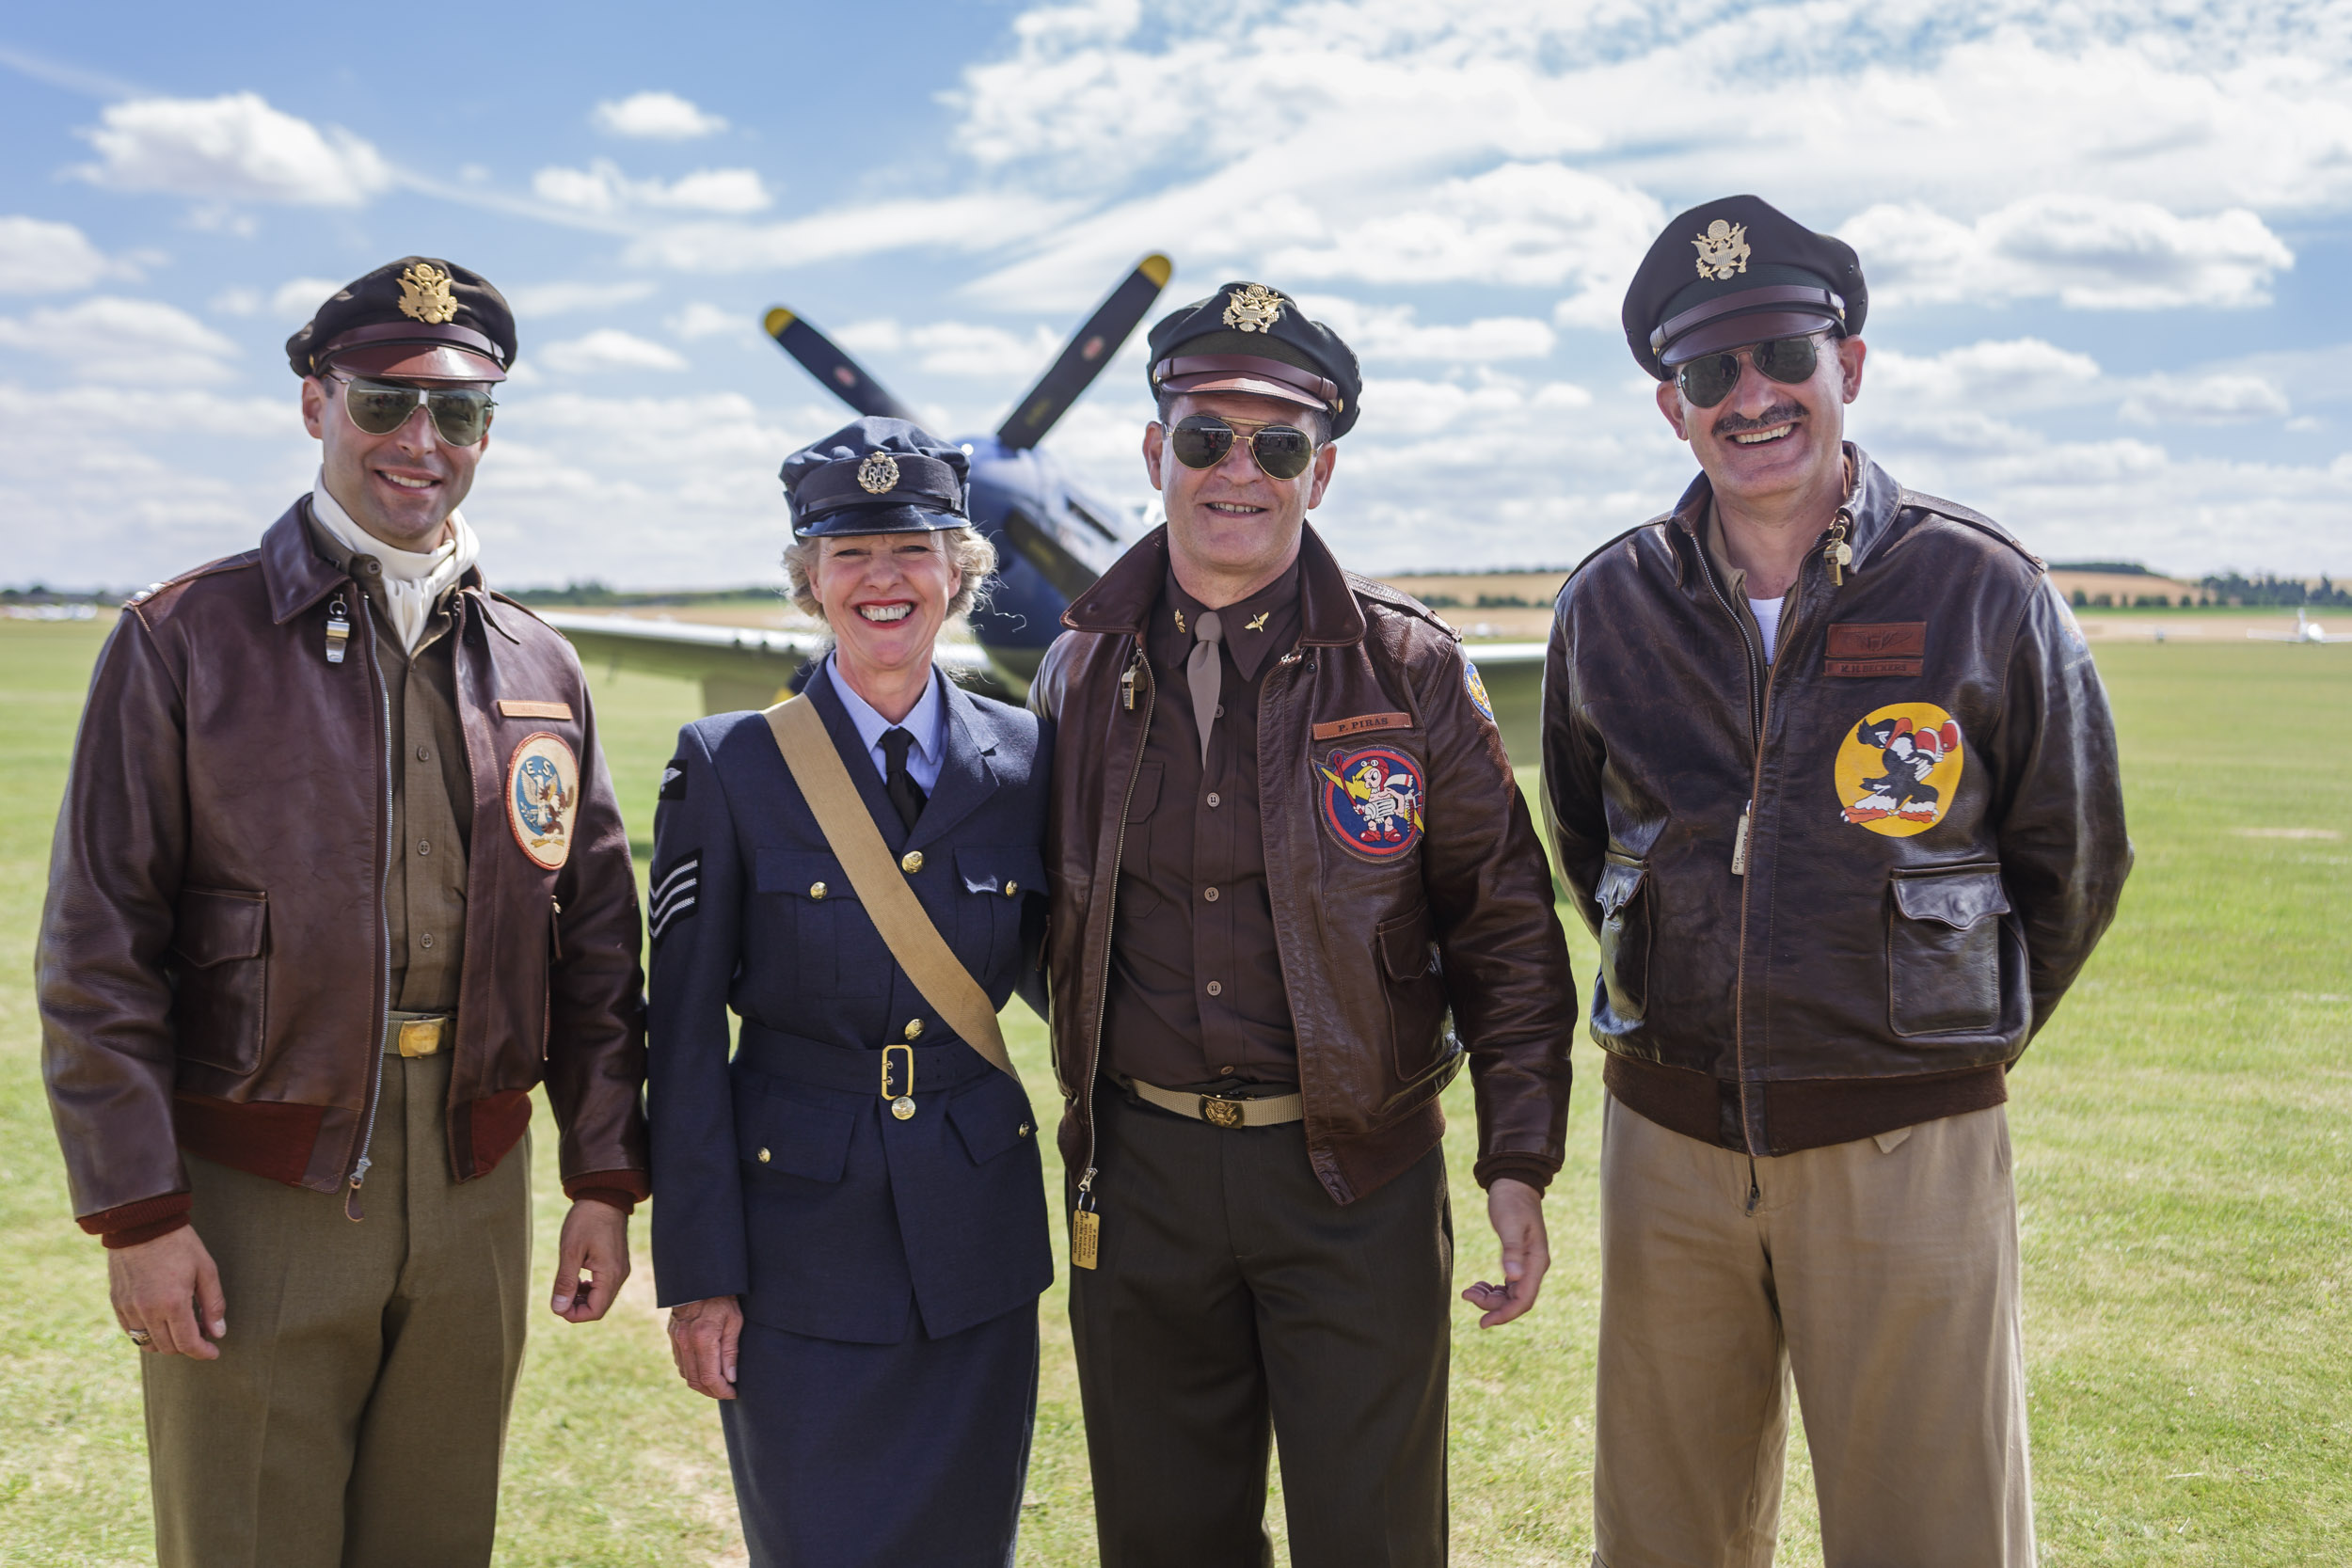 Duxford Airshow actors in period costume.